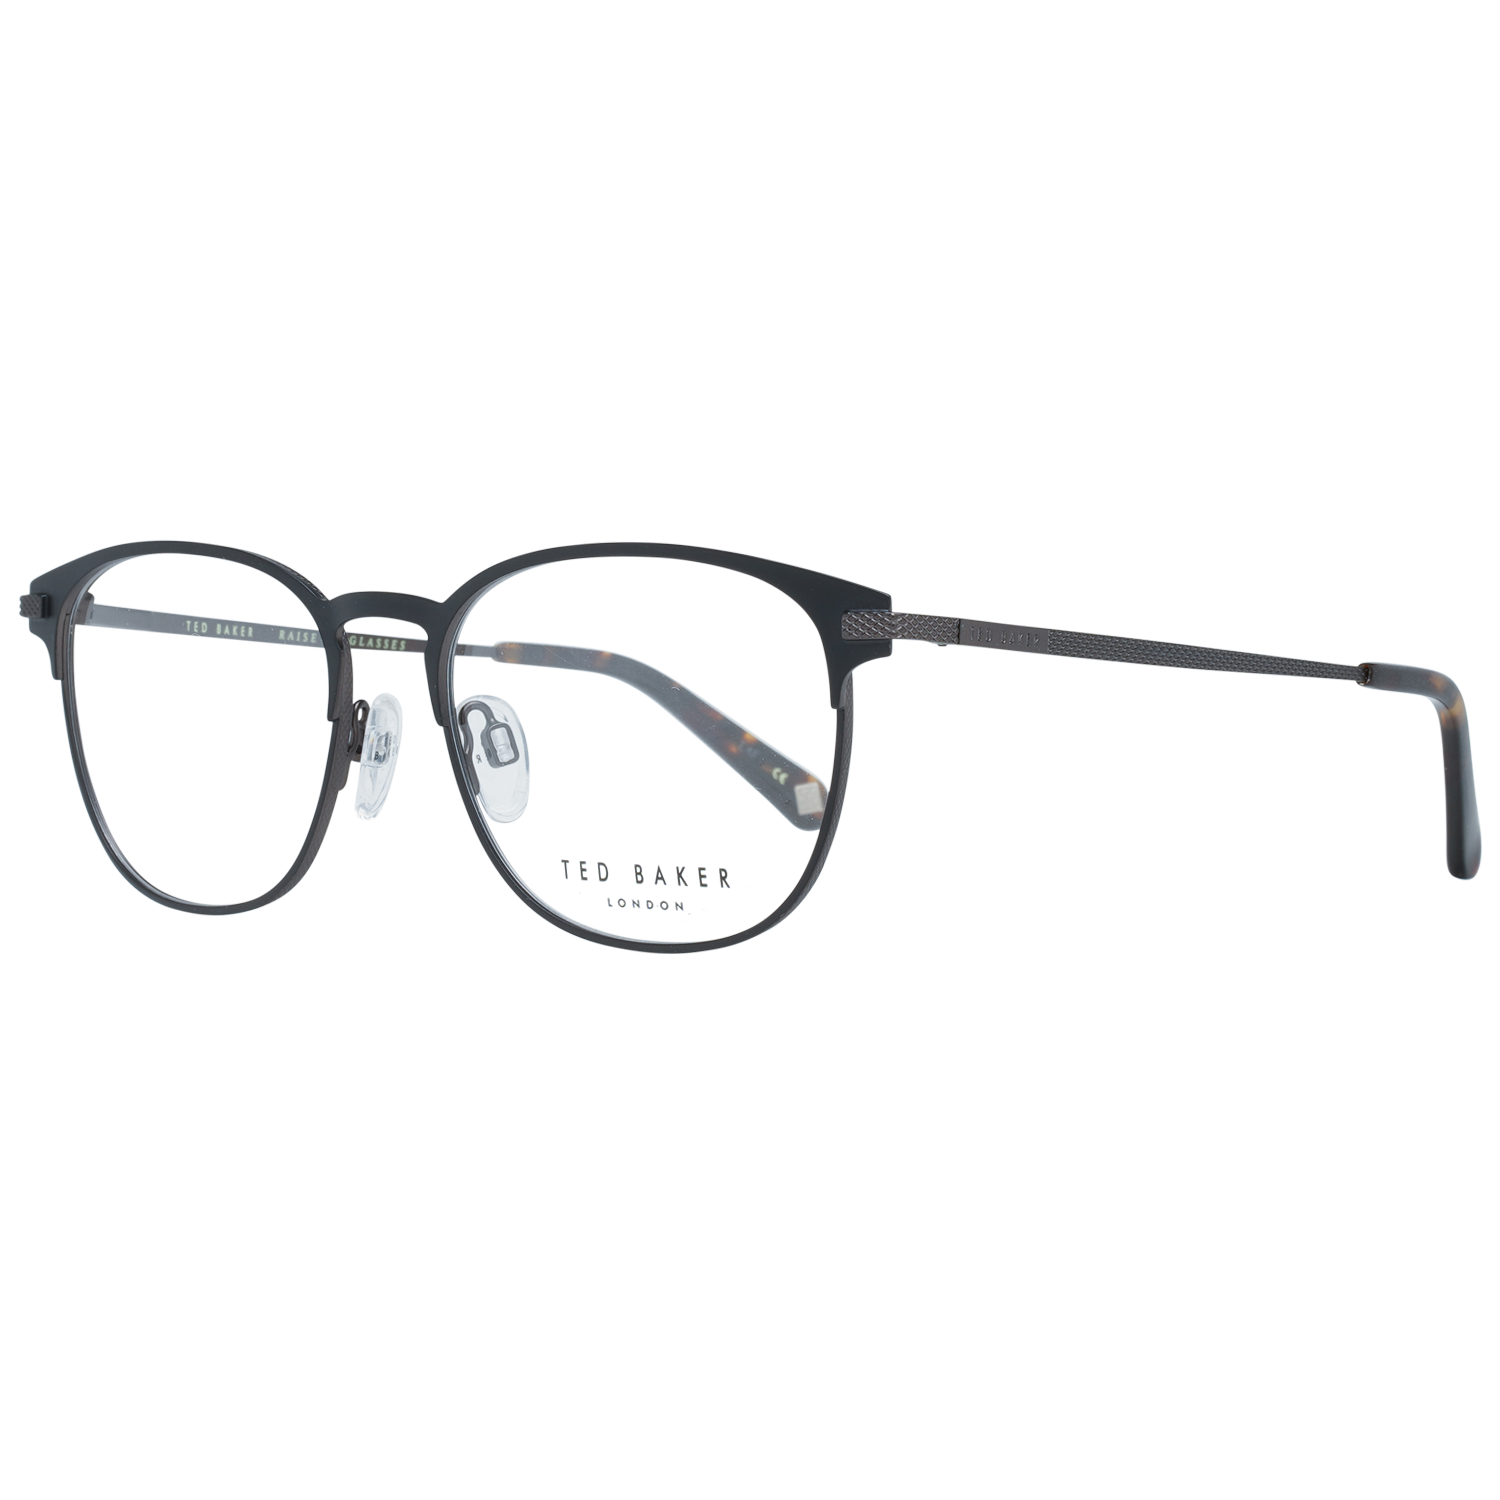 Ted Baker Frames Ted Baker Optical Frame Prescription Glasses TB4261 001 52 Kendrick Eyeglasses Eyewear UK USA Australia 